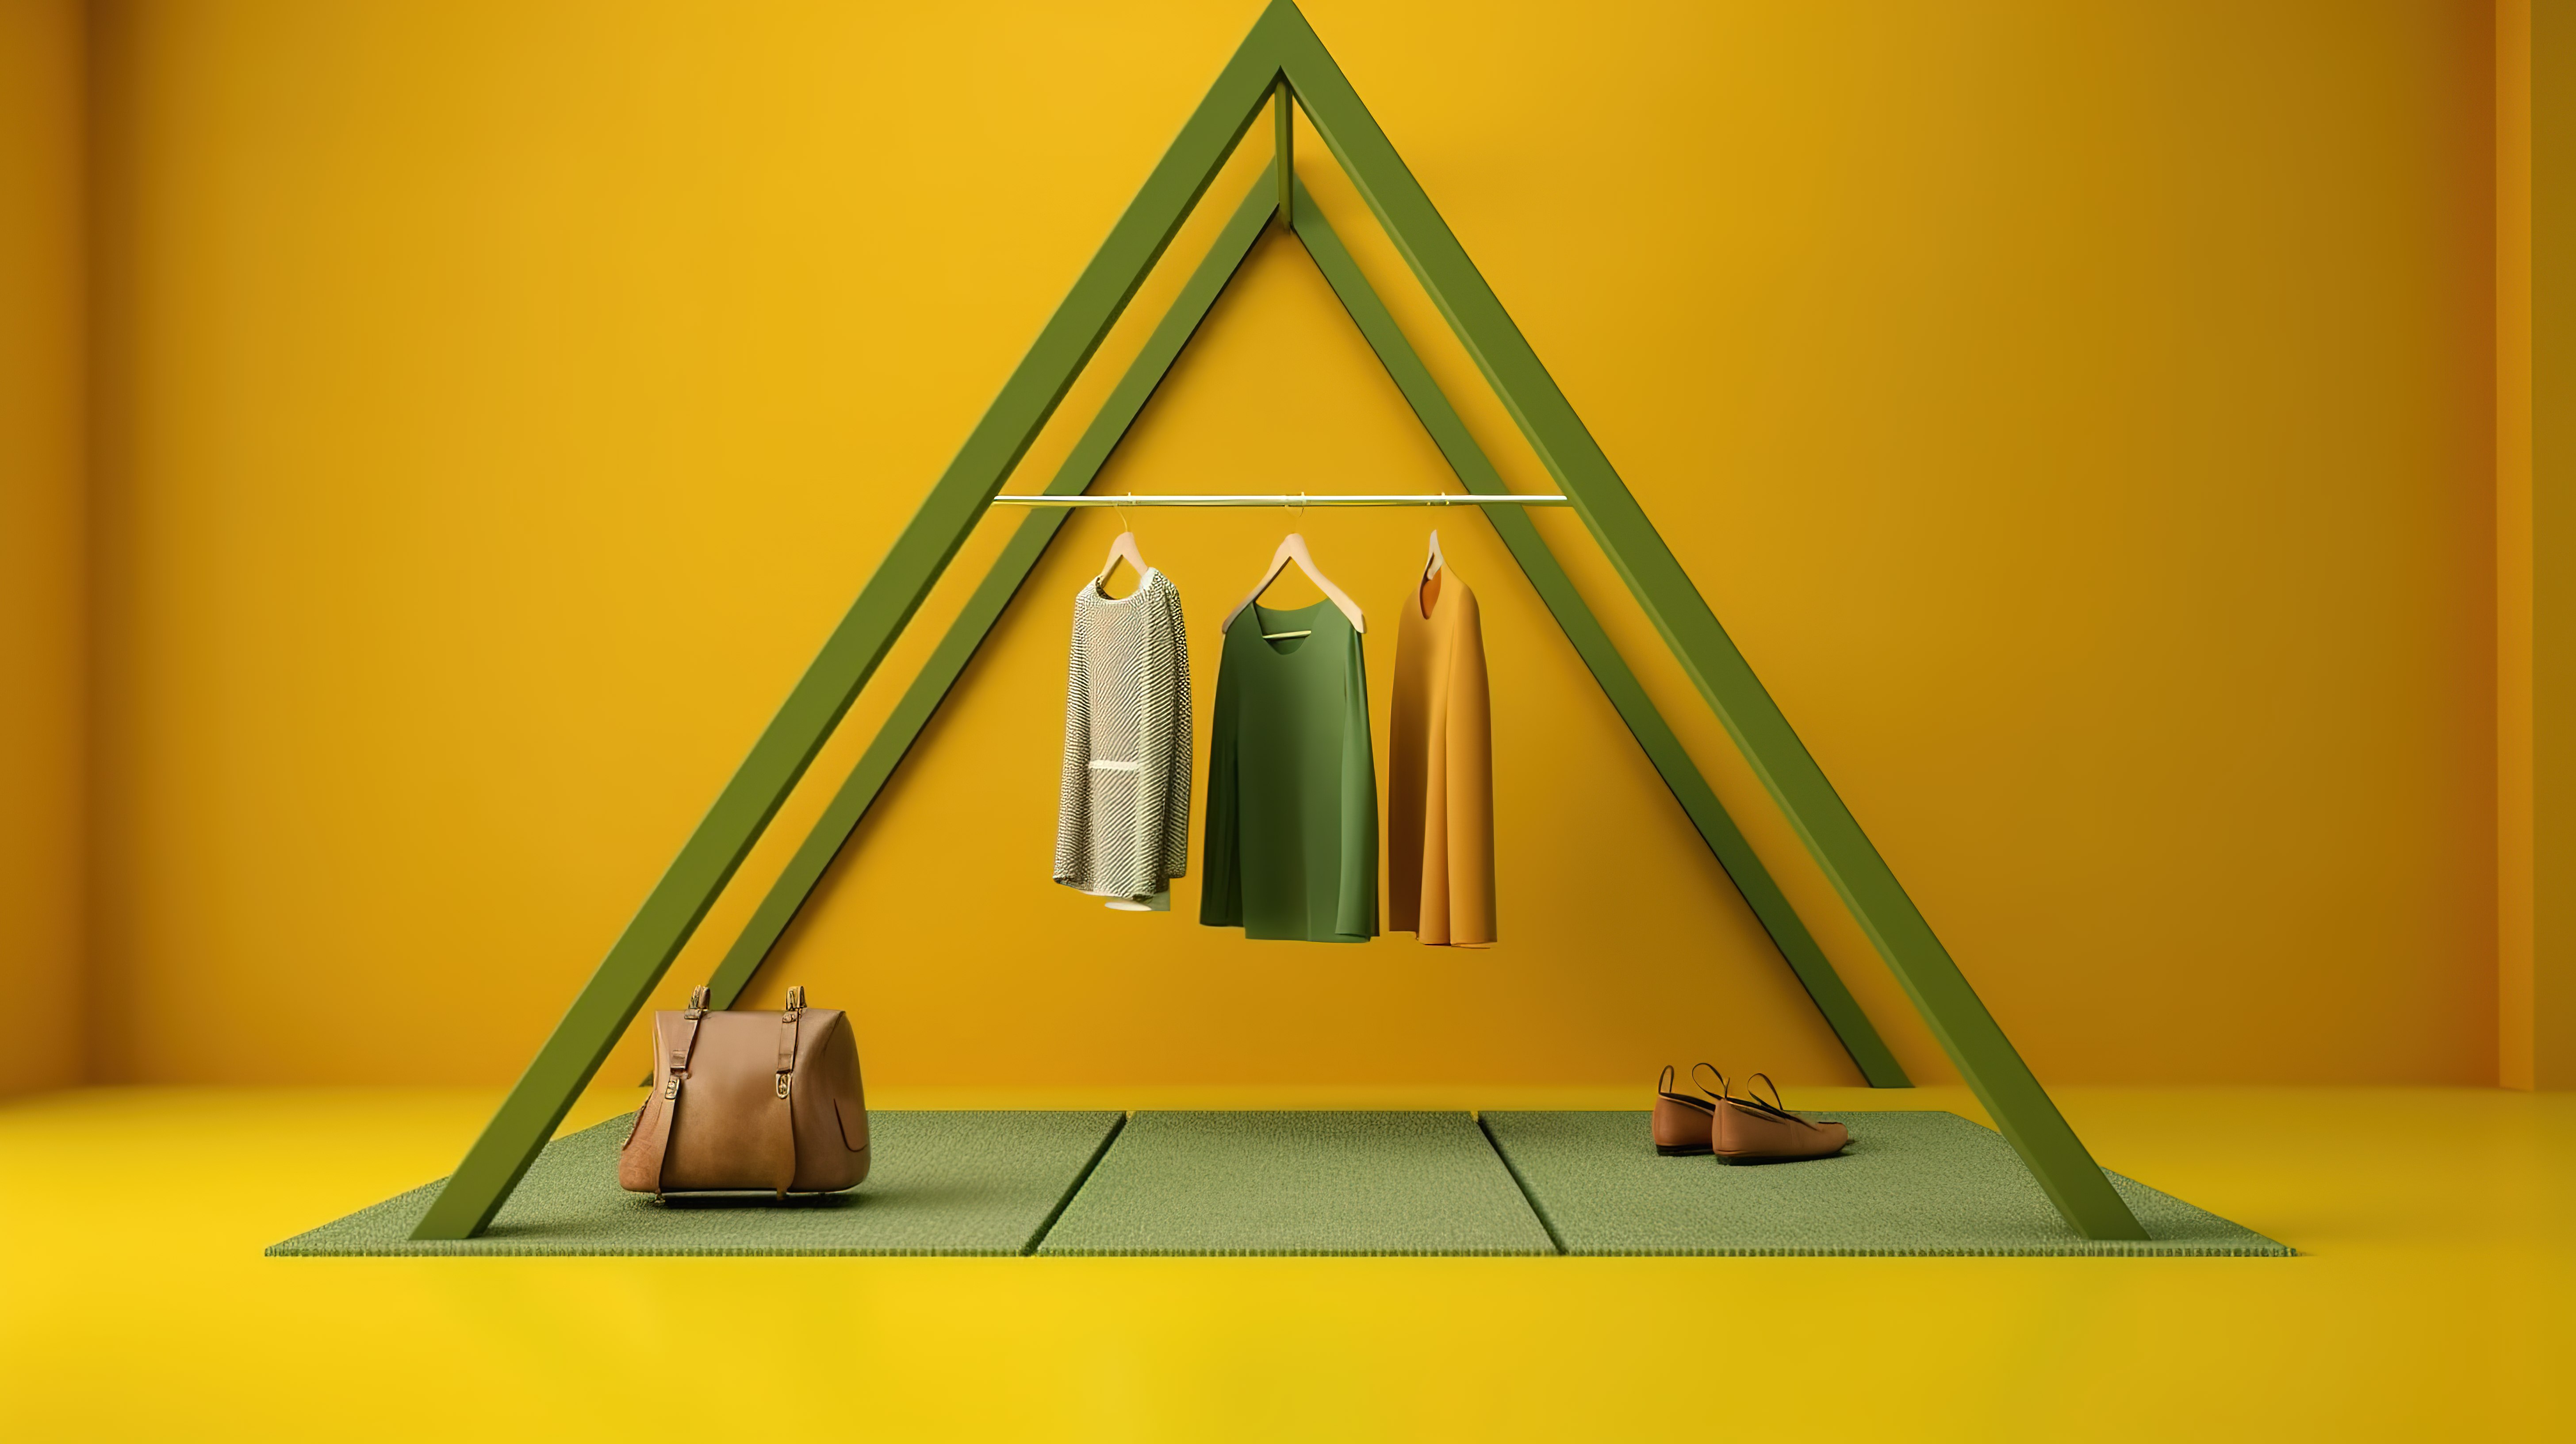 衣架上挂满了衣服，周围环绕着袋子和市场道具，背景是 3D 渲染的几何图案黄色和绿色地板图片